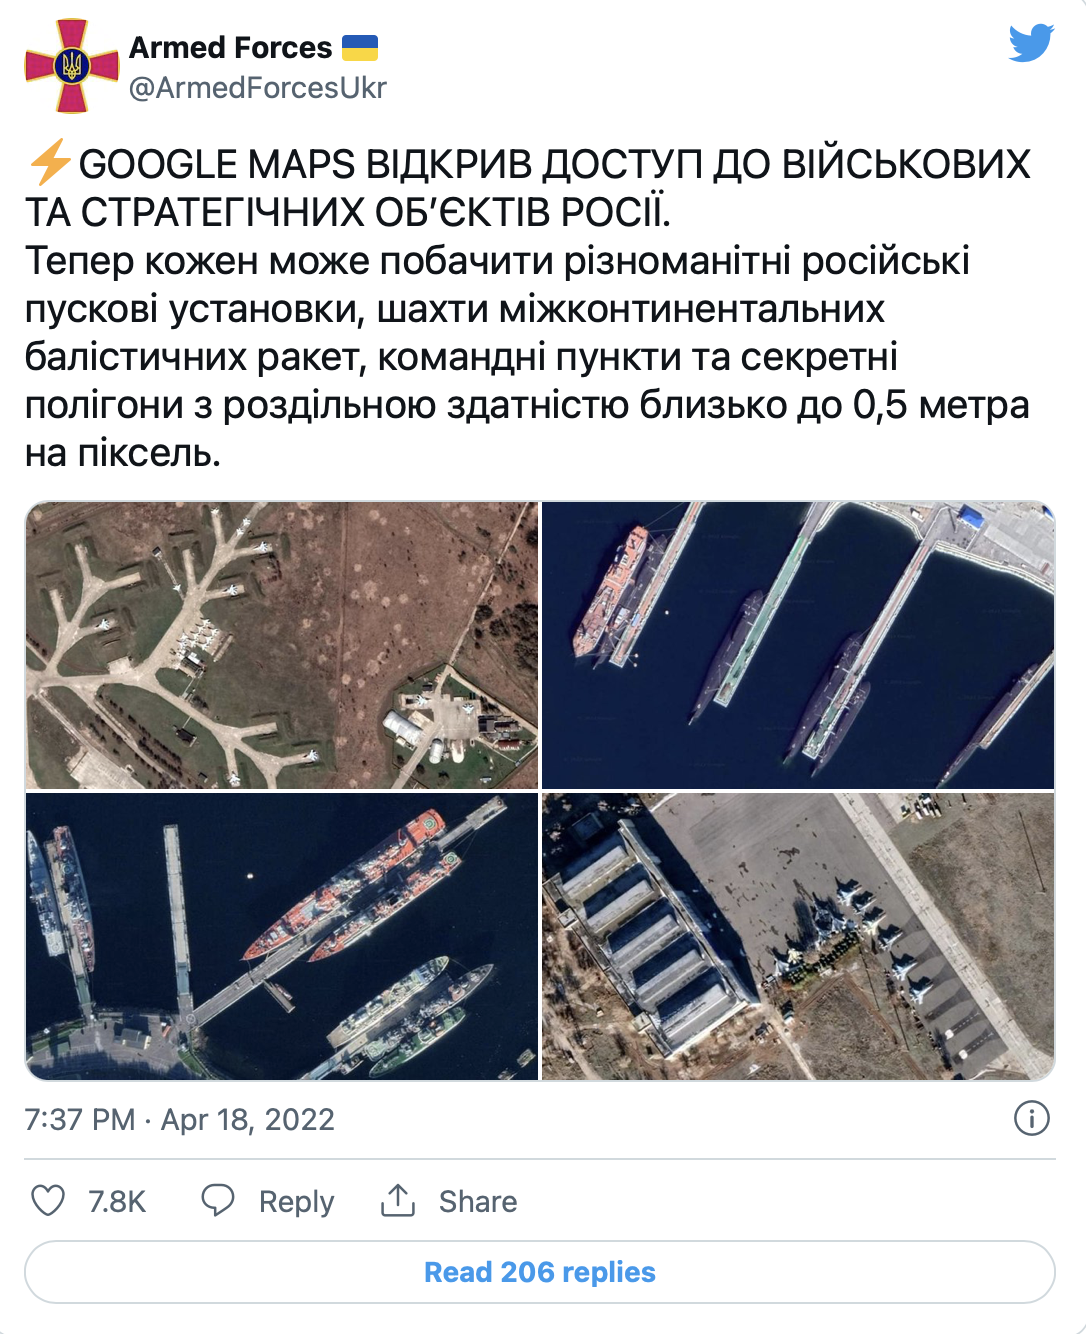 推特账号“乌克兰武装力量”发布的“俄军事设施”卫星图